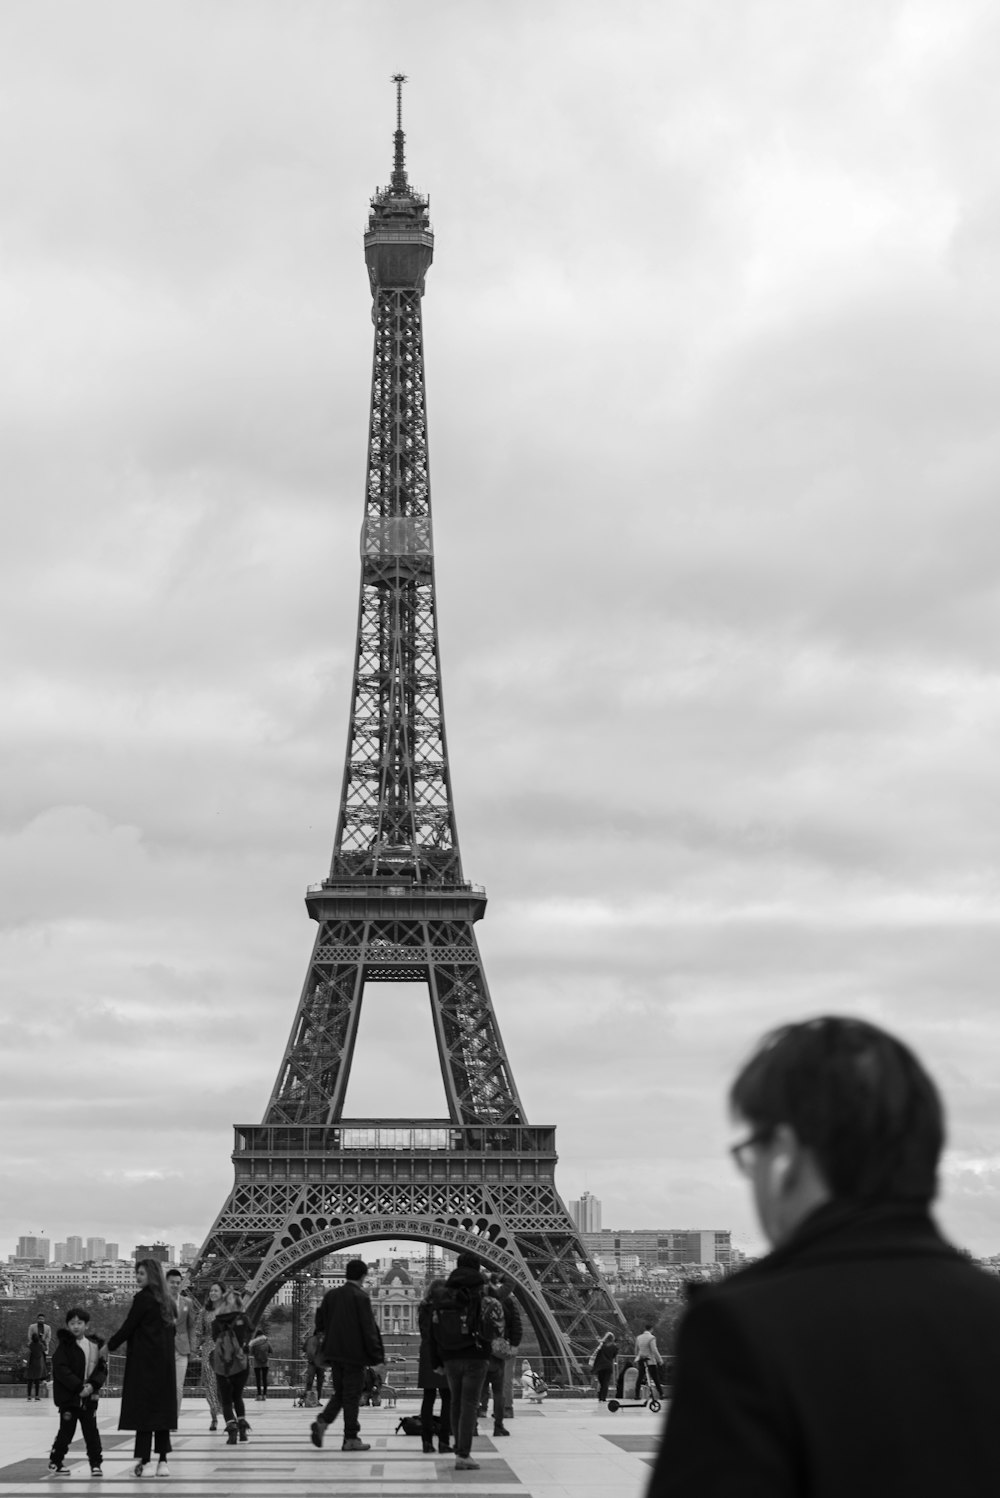 에펠탑의 그레이스케일 사진